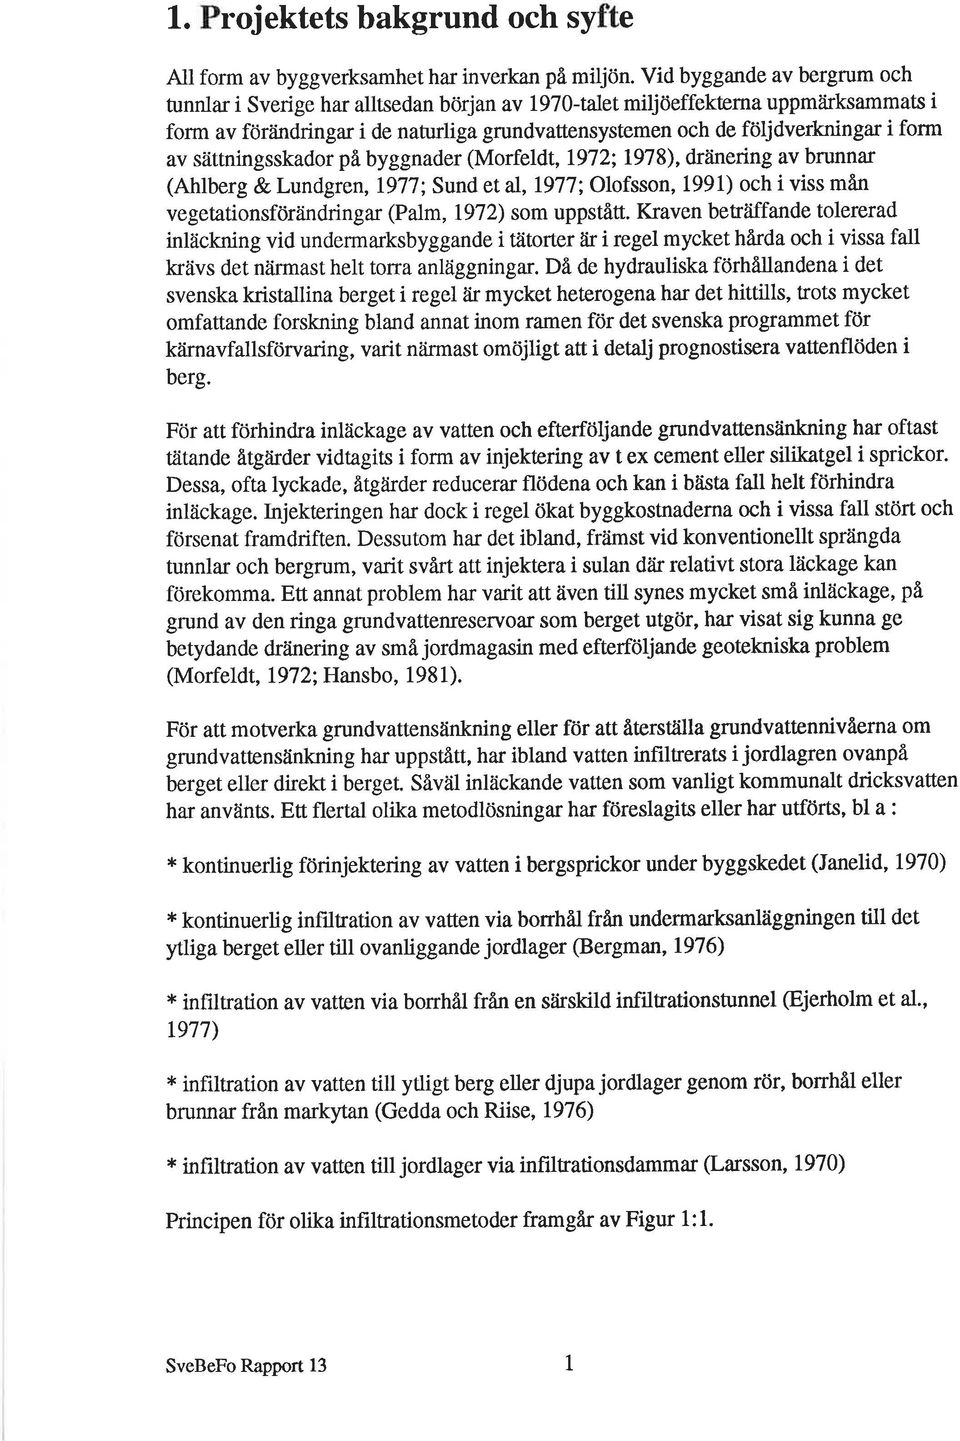 indringar i de naturliga grundvattensystemen och de följdverkningar i forrn av síittningsskador på byggnader (Morfeldt,1972; 1978), drlinering av brunnar (Ahlberg & Lundgren,1.